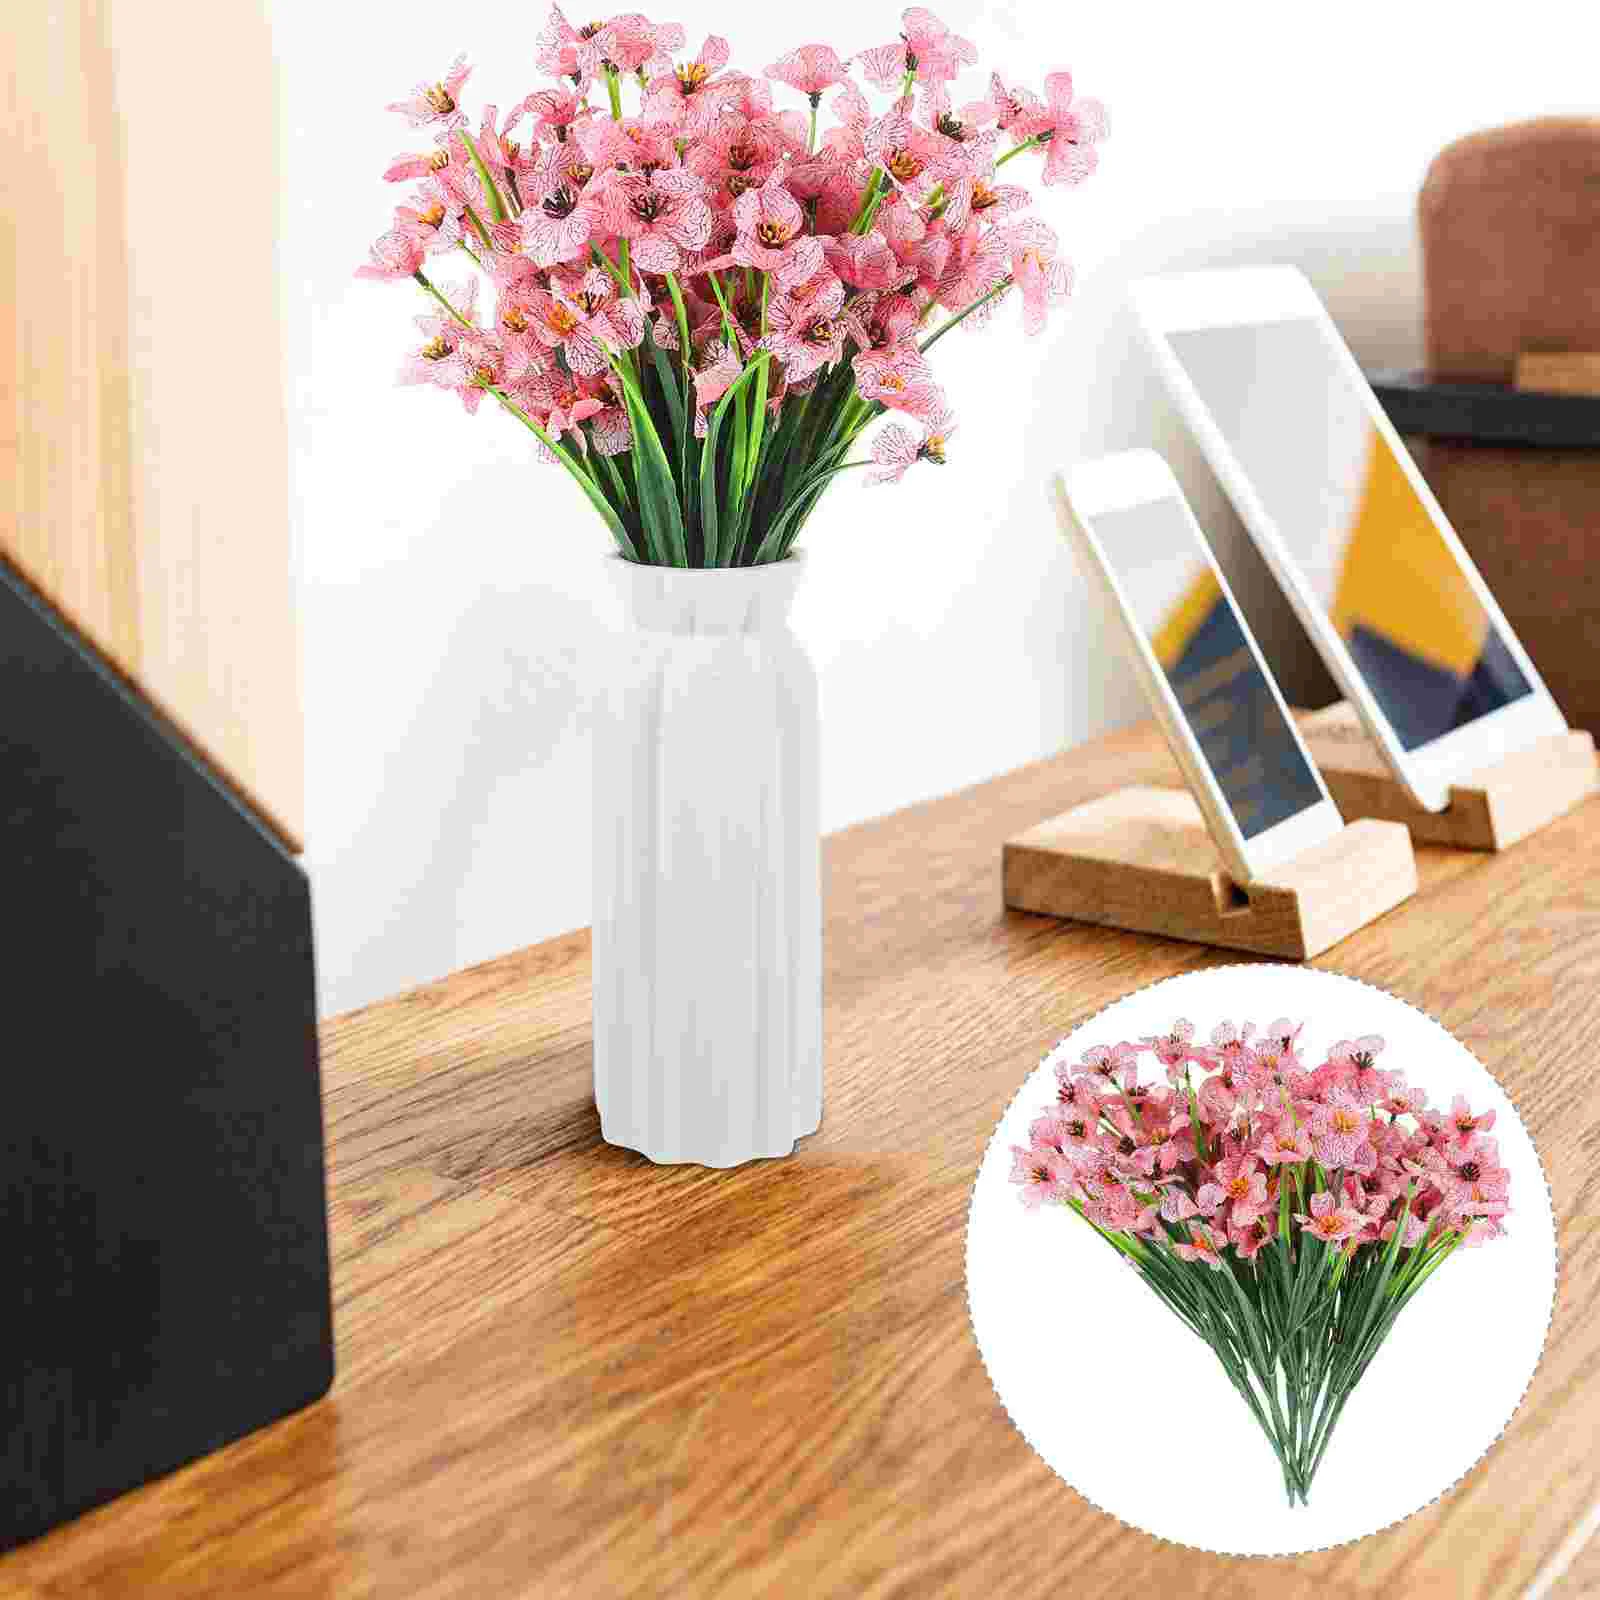 

8 Pcs DIY Flower Arrangement Decor Violet Stems Faux Flowers Office Household Festival Accessory Home Artificial